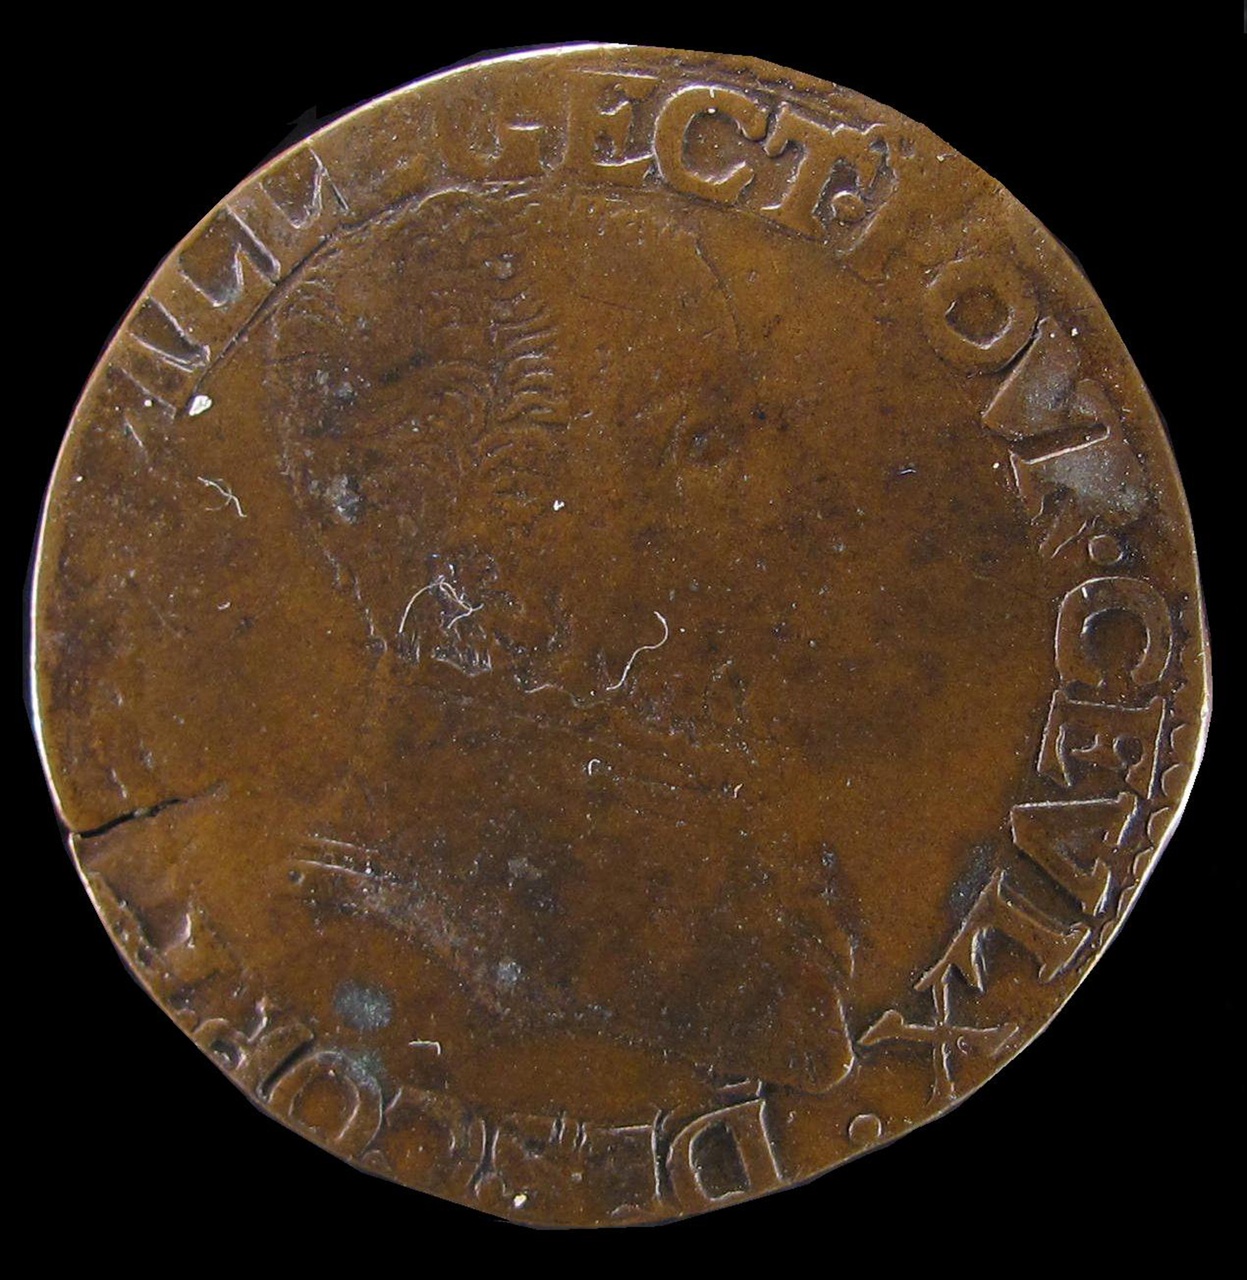 Legpenning van de rekenkamer van Rijssel, 1570